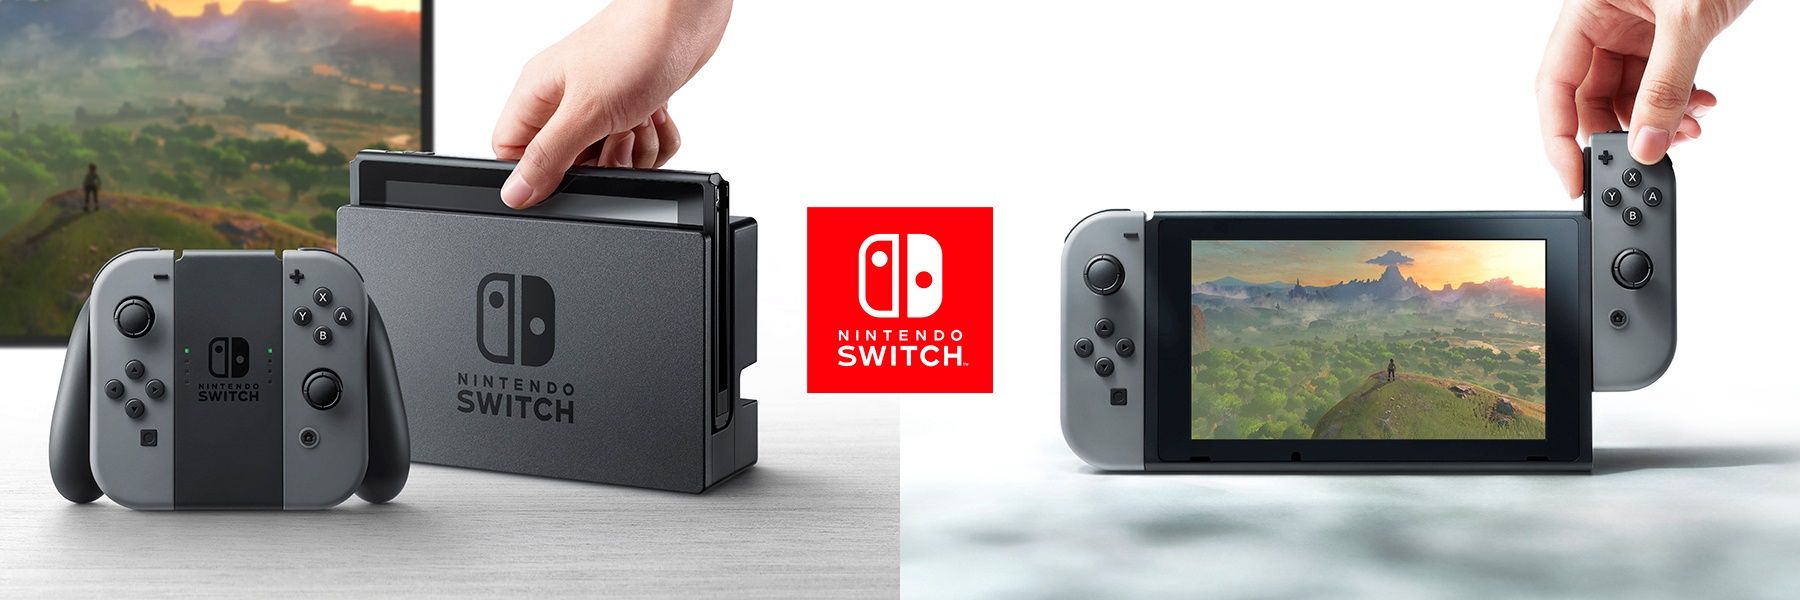 Nintendo switch zelda games